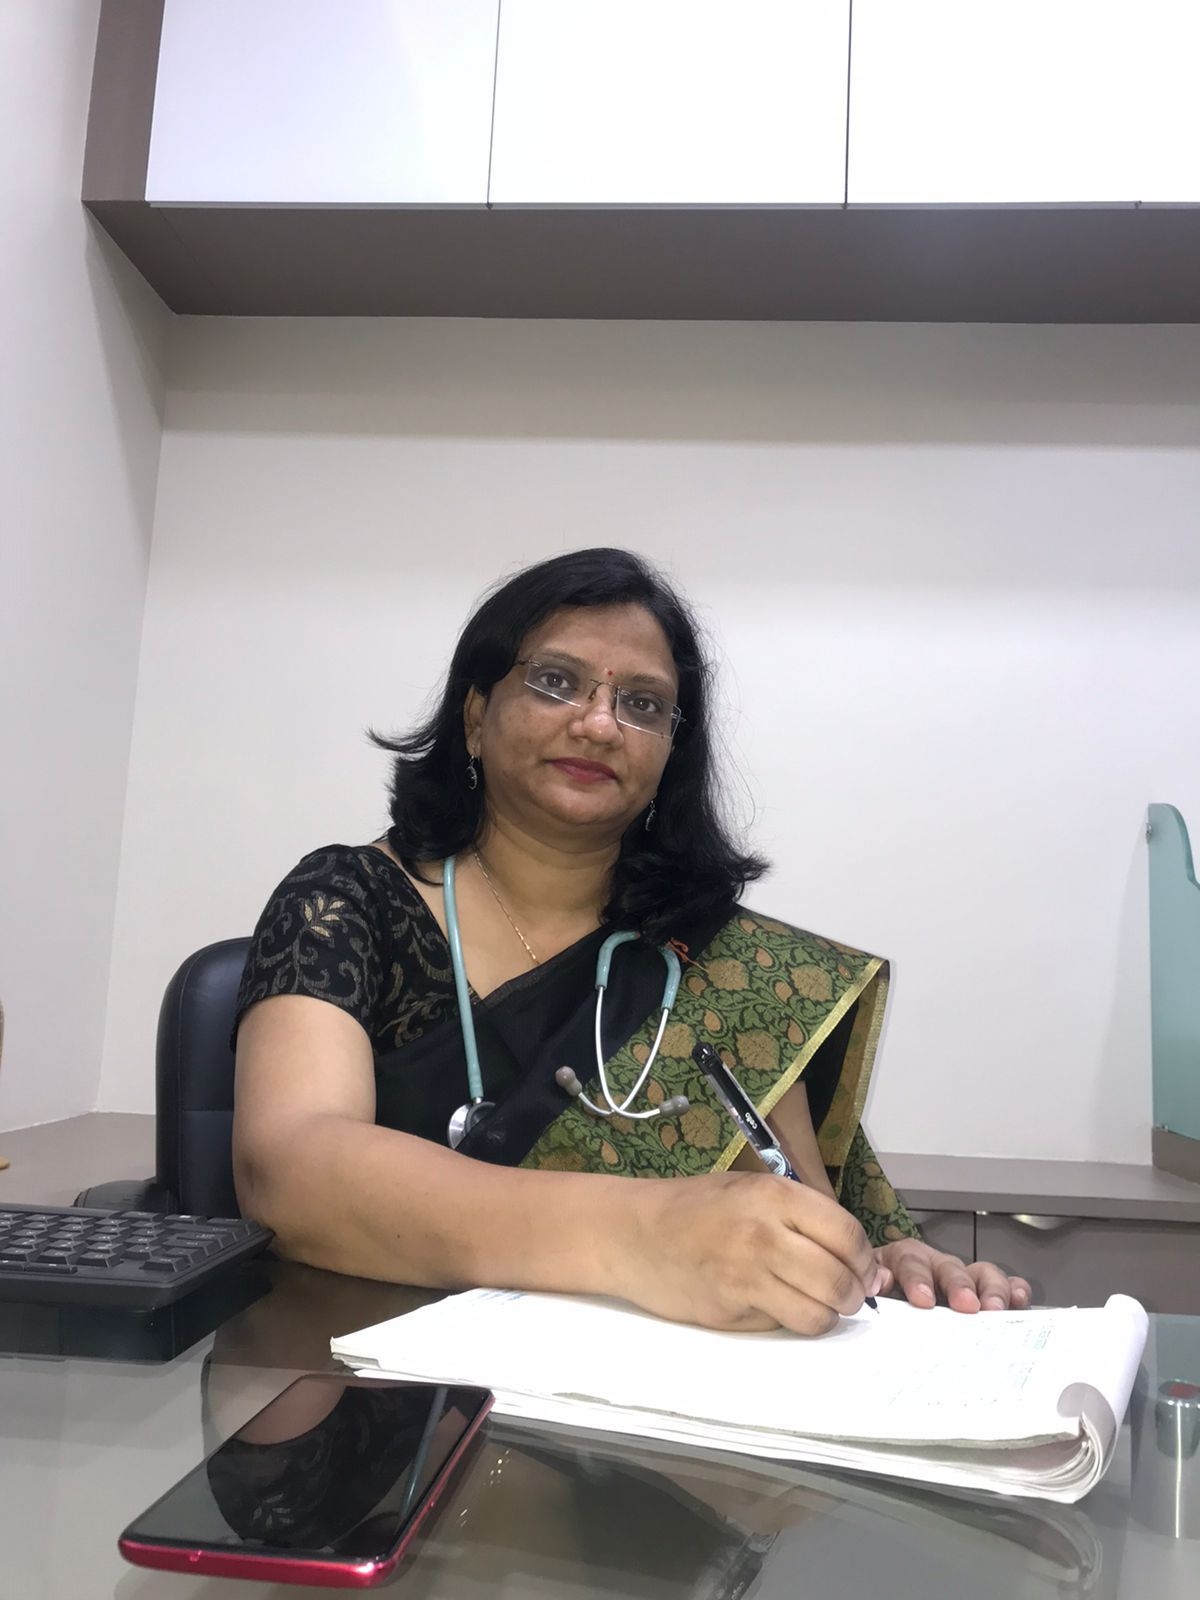 Dr. Megha Agrawal